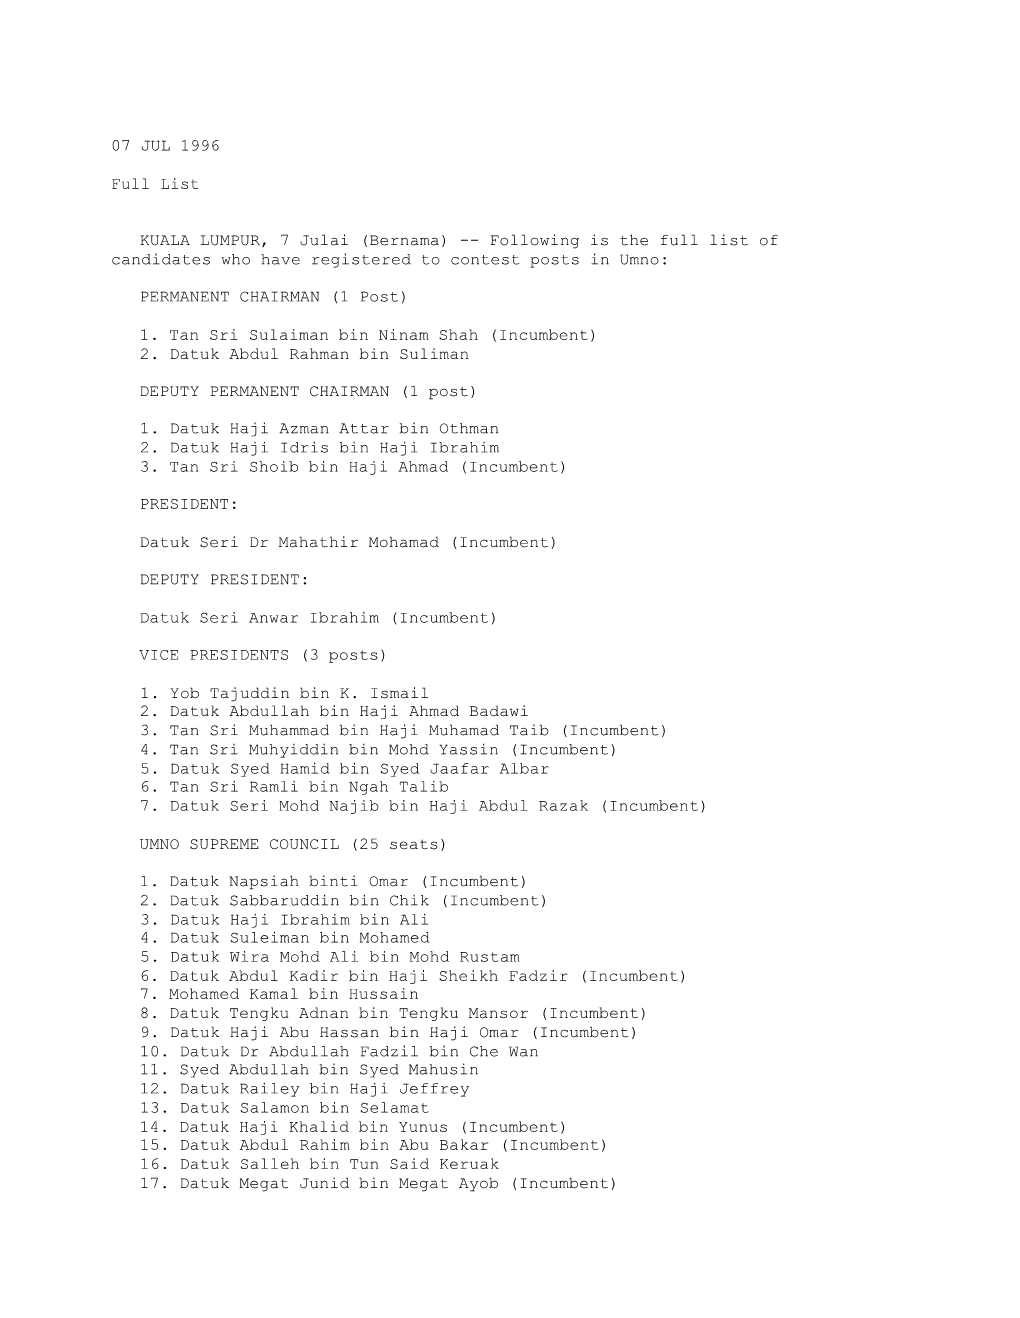 Full List (Bernama 07/07/1996)